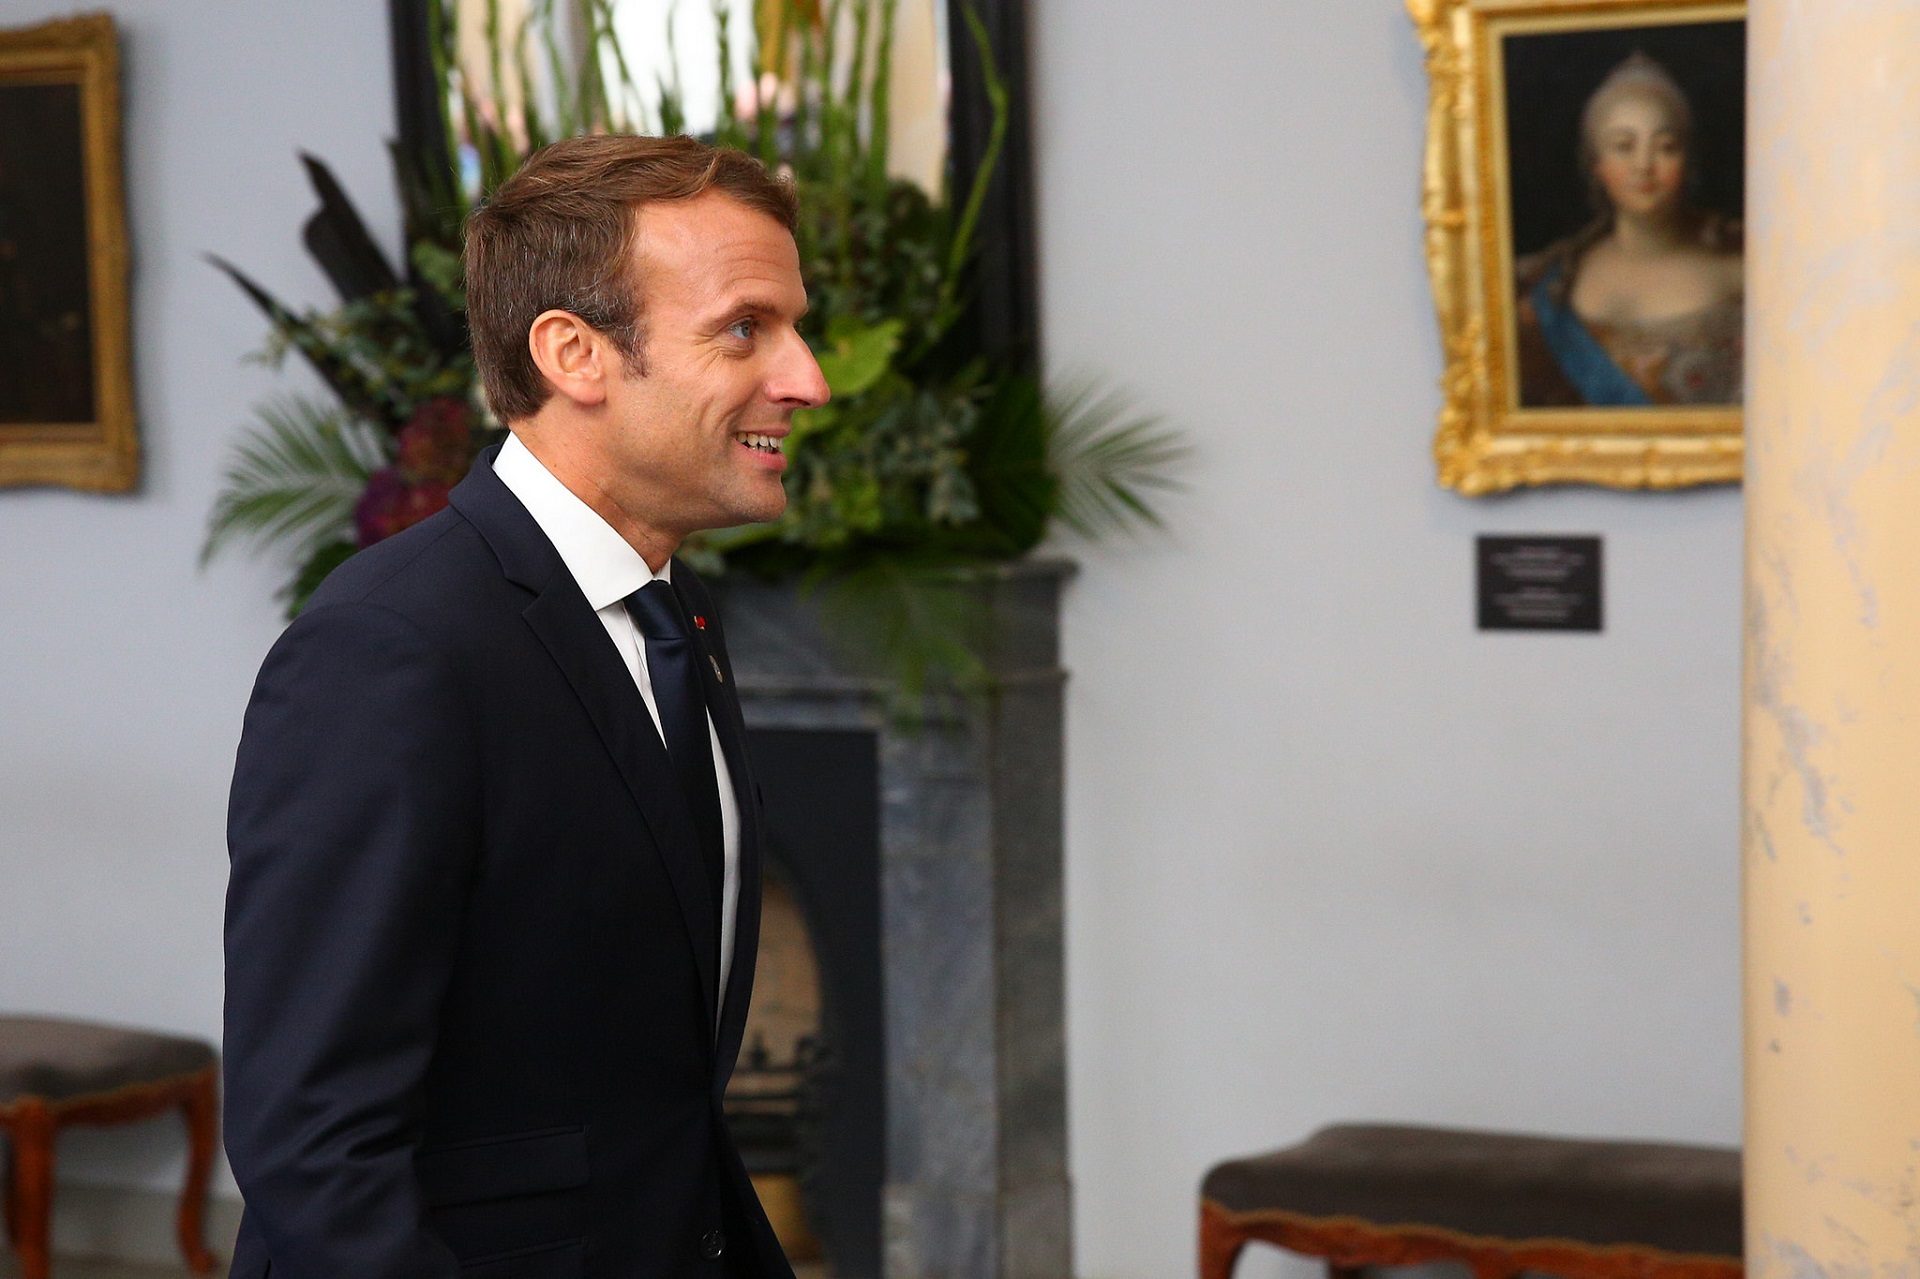 Le président français Emmanuel Macron a rencontré le pape François le 26 juin 2018 au Vatican. | © Flickr/Arno Mikkor/CC BY 2.0